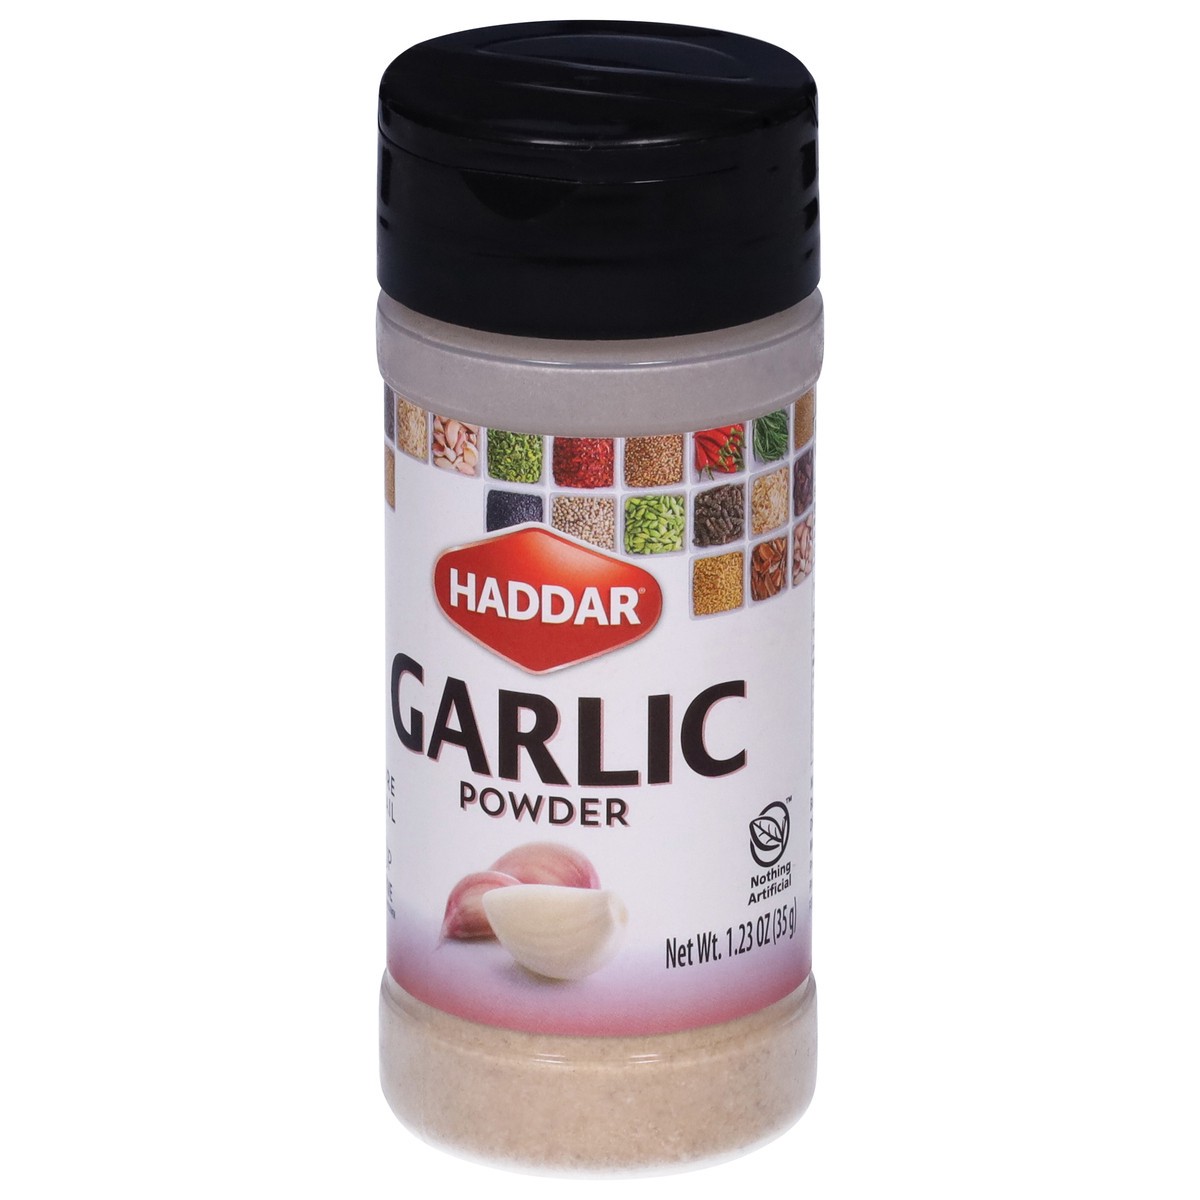 slide 3 of 9, Haddar Garlic Powder 1.23 oz, 1.23 oz